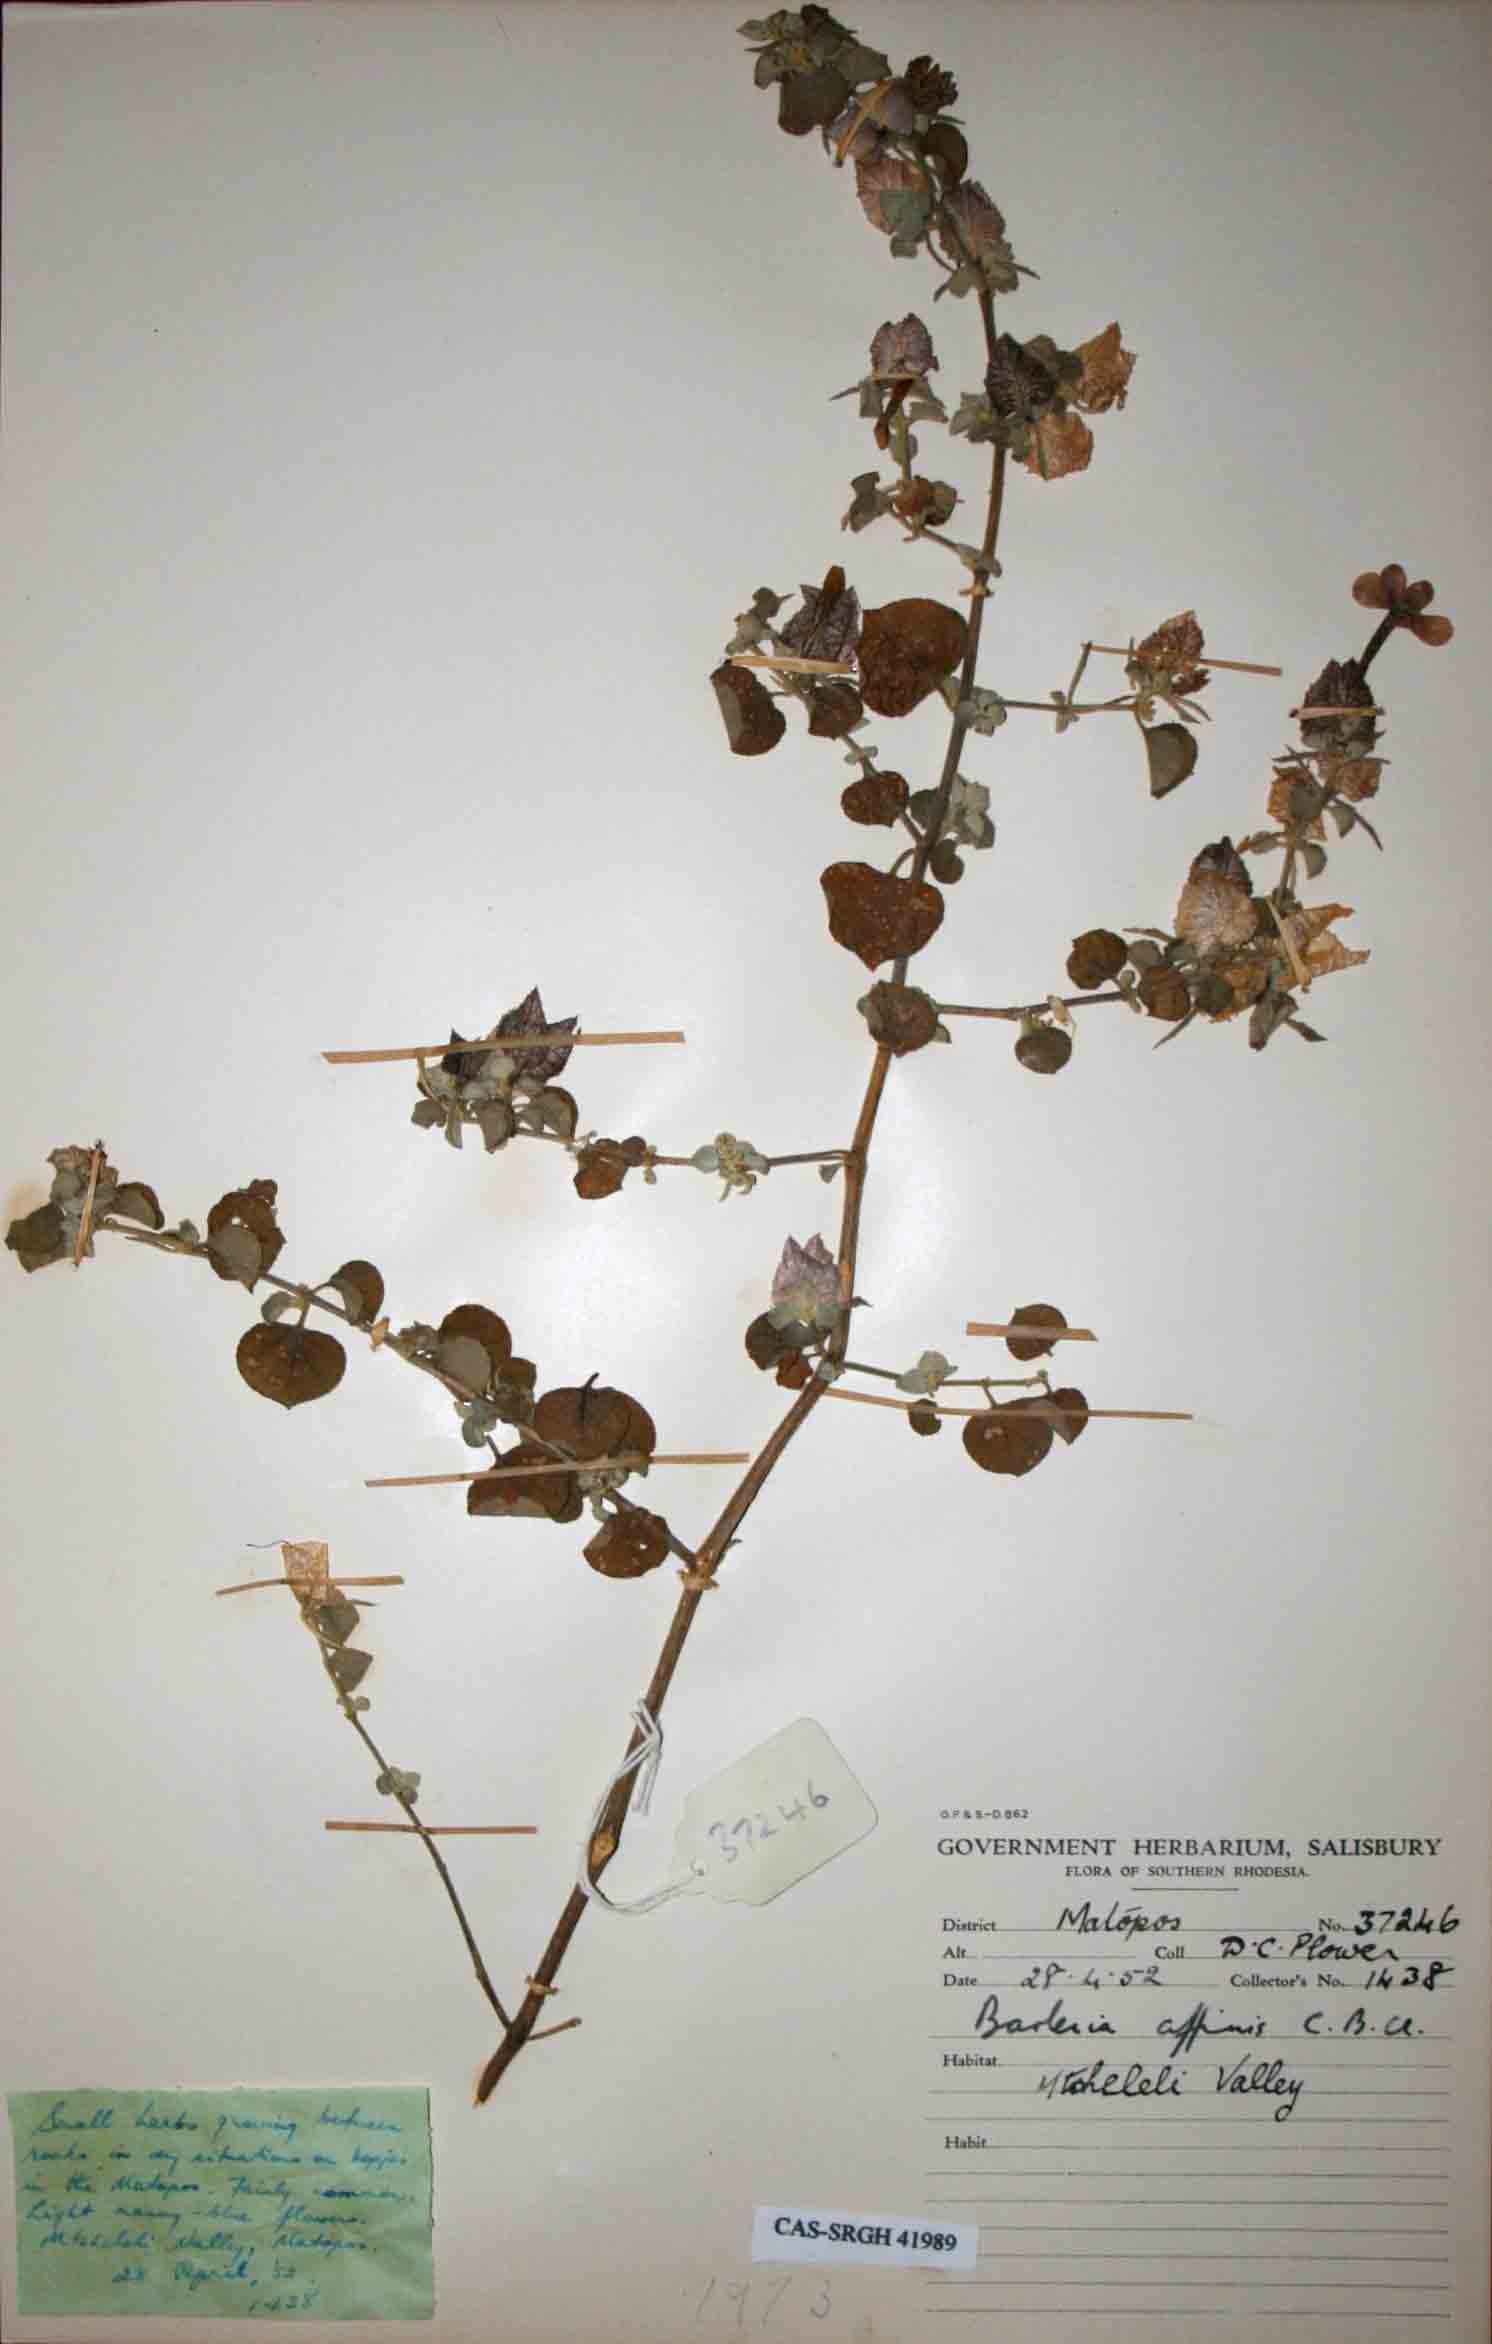 Barleria affinis subsp. affinis